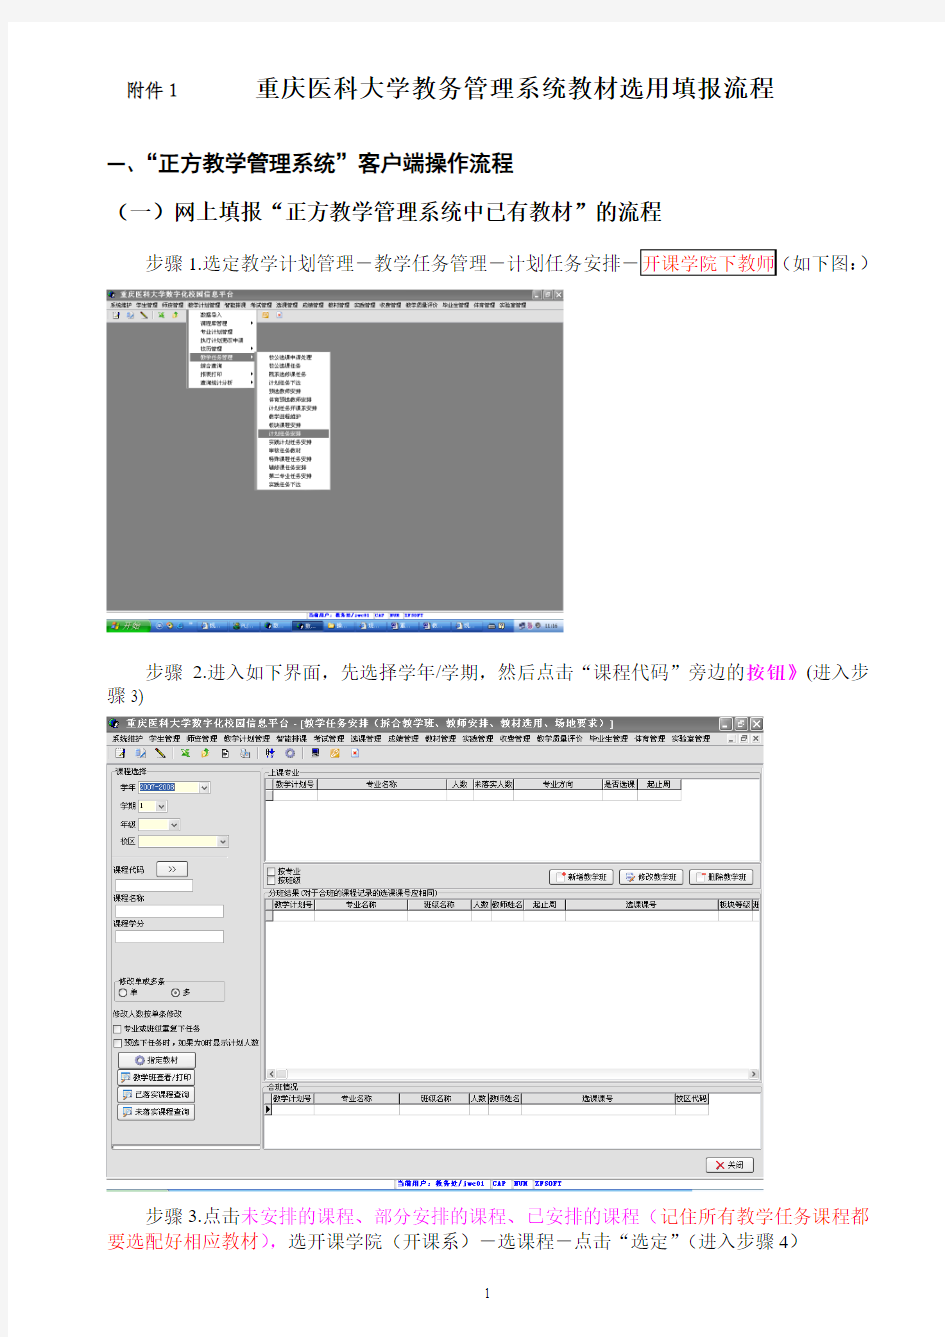 重庆医科大学教务管理系统教材选用填报流程